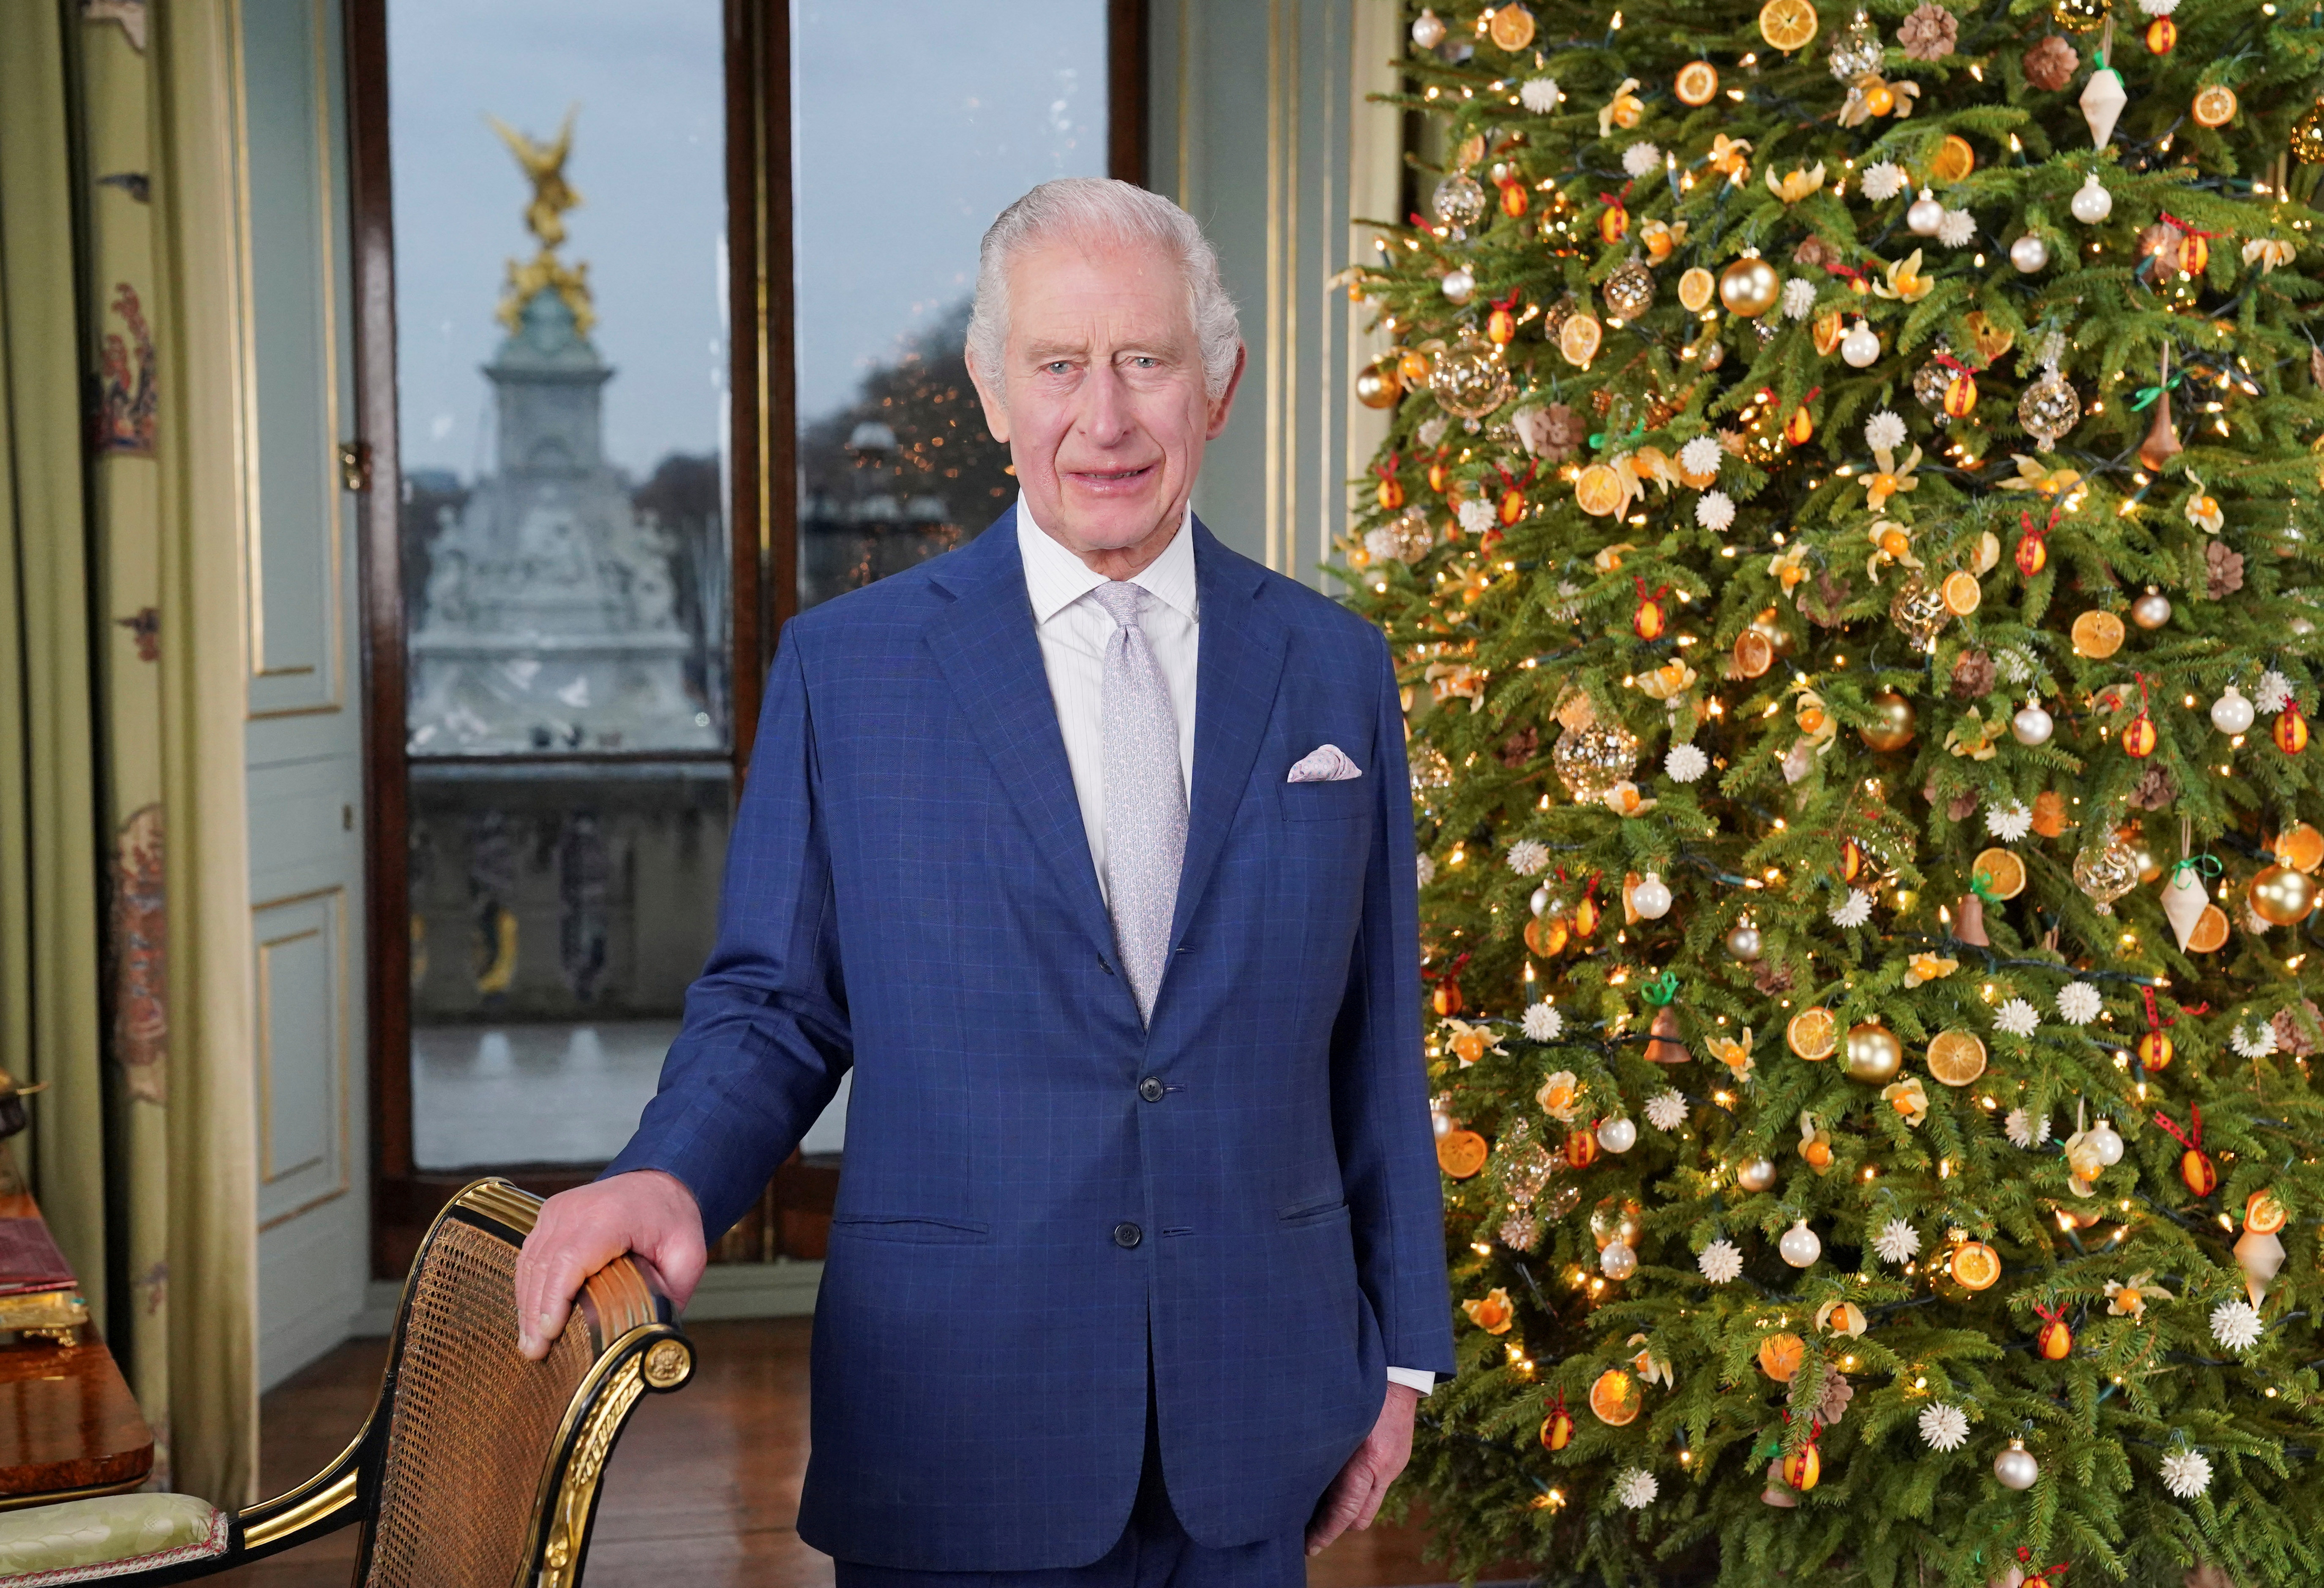 Le roi Charles a prononcé son discours de Noël devant un arbre vivant